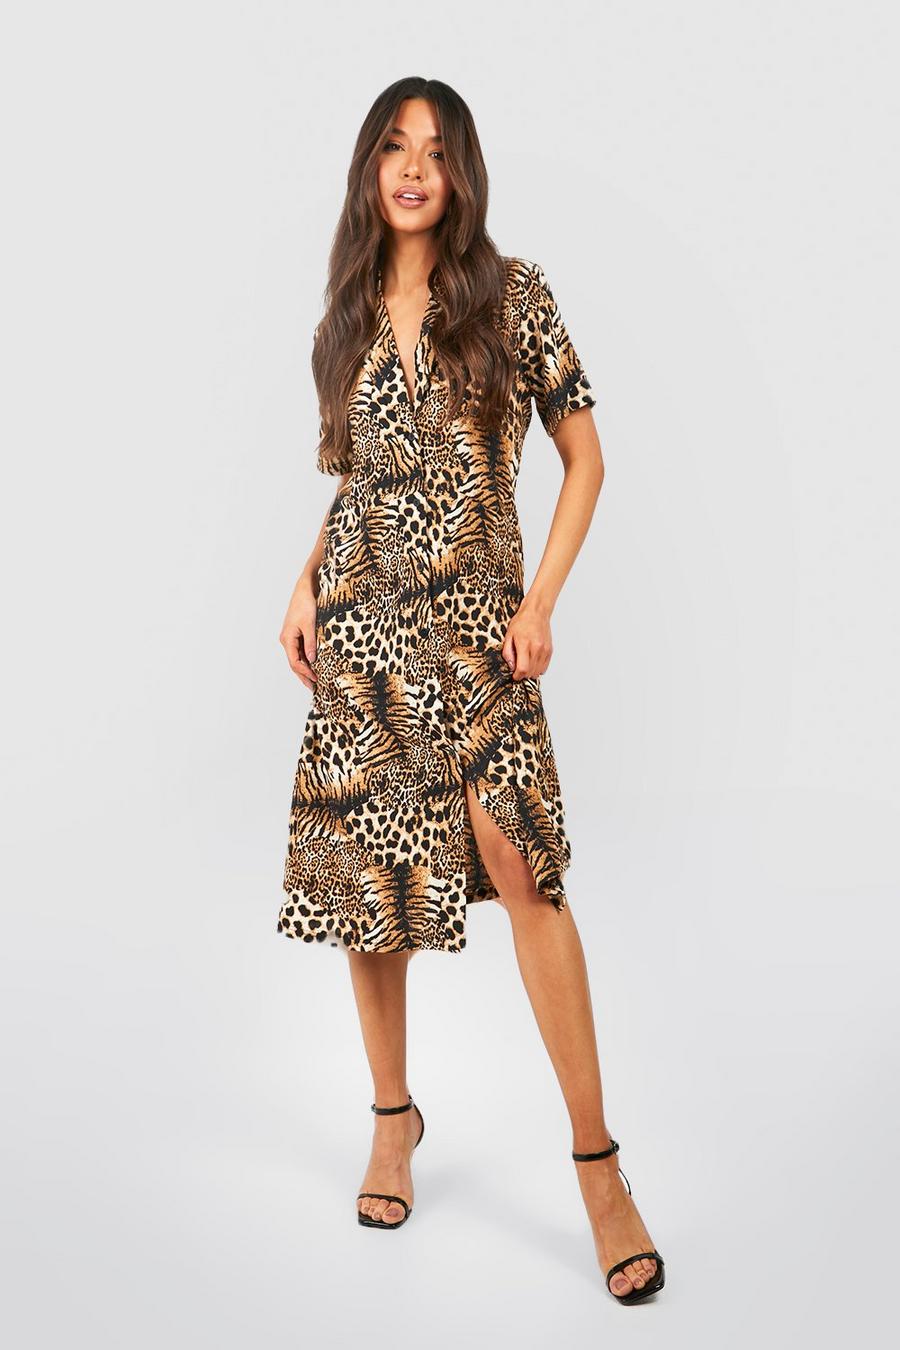 Luipaard Midi-jurk in de stijl van een shirt met een mix van tijger- en luipaardprint image number 1